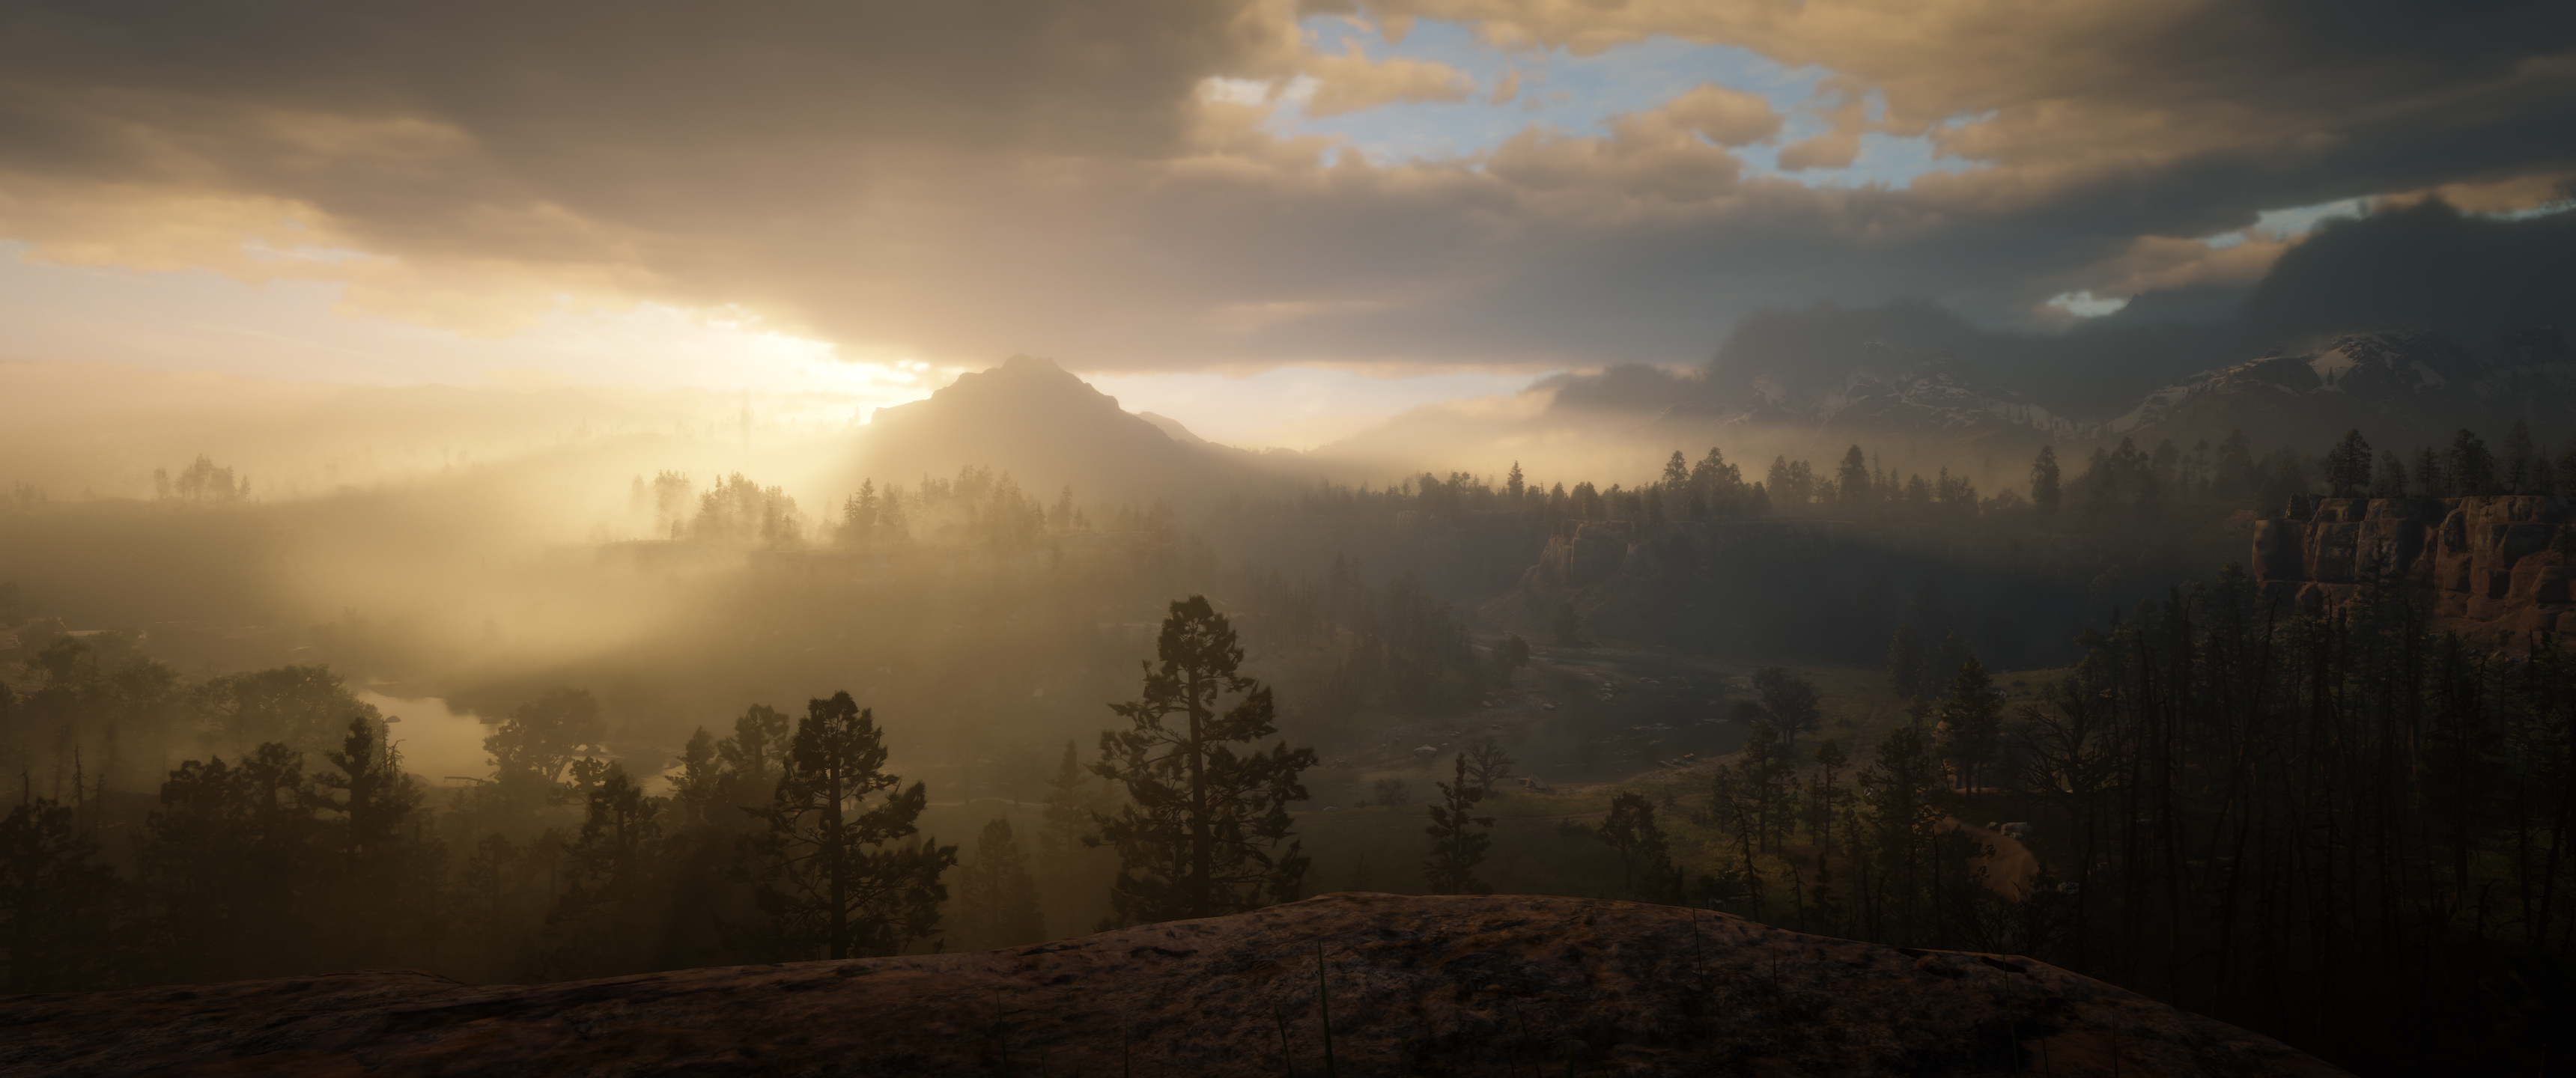 General 3440x1440 Red Dead Redemption 2 Rockstar Games screen shot video game landscape sunset landscape